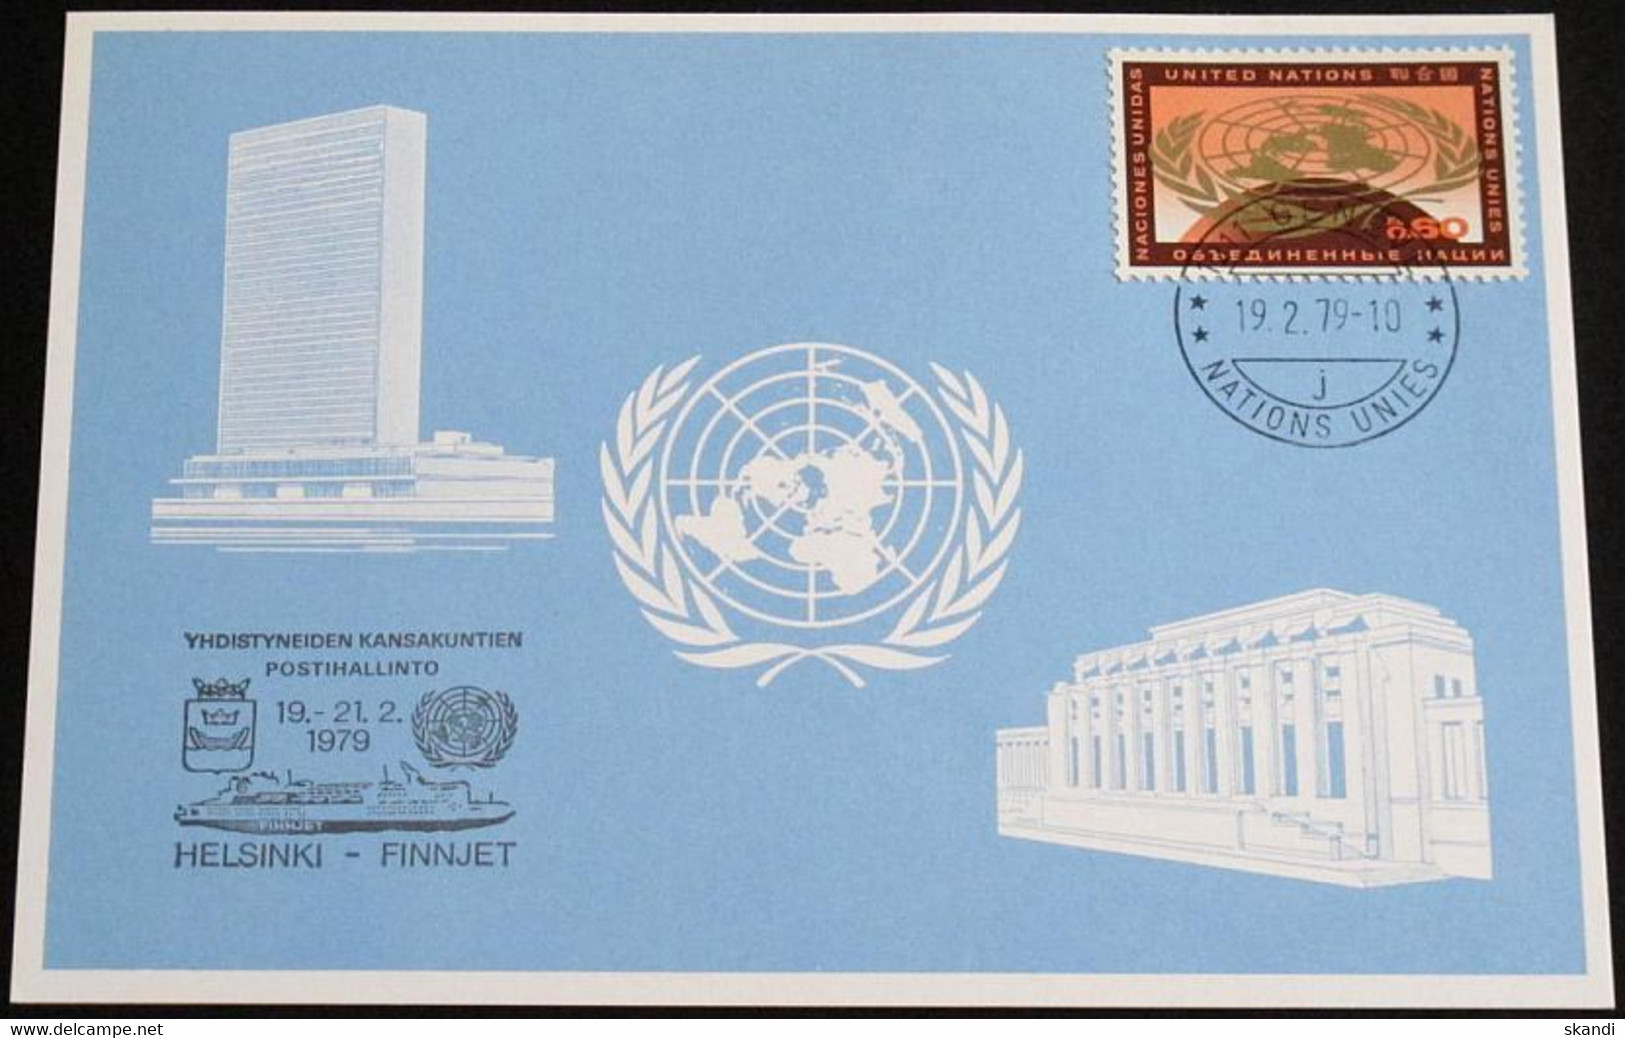 UNO GENF 1979 Mi-Nr. 74 Blaue Karte - Blue Card Mit Erinnerungsstempel HELSINKI - FINNJET - Lettres & Documents